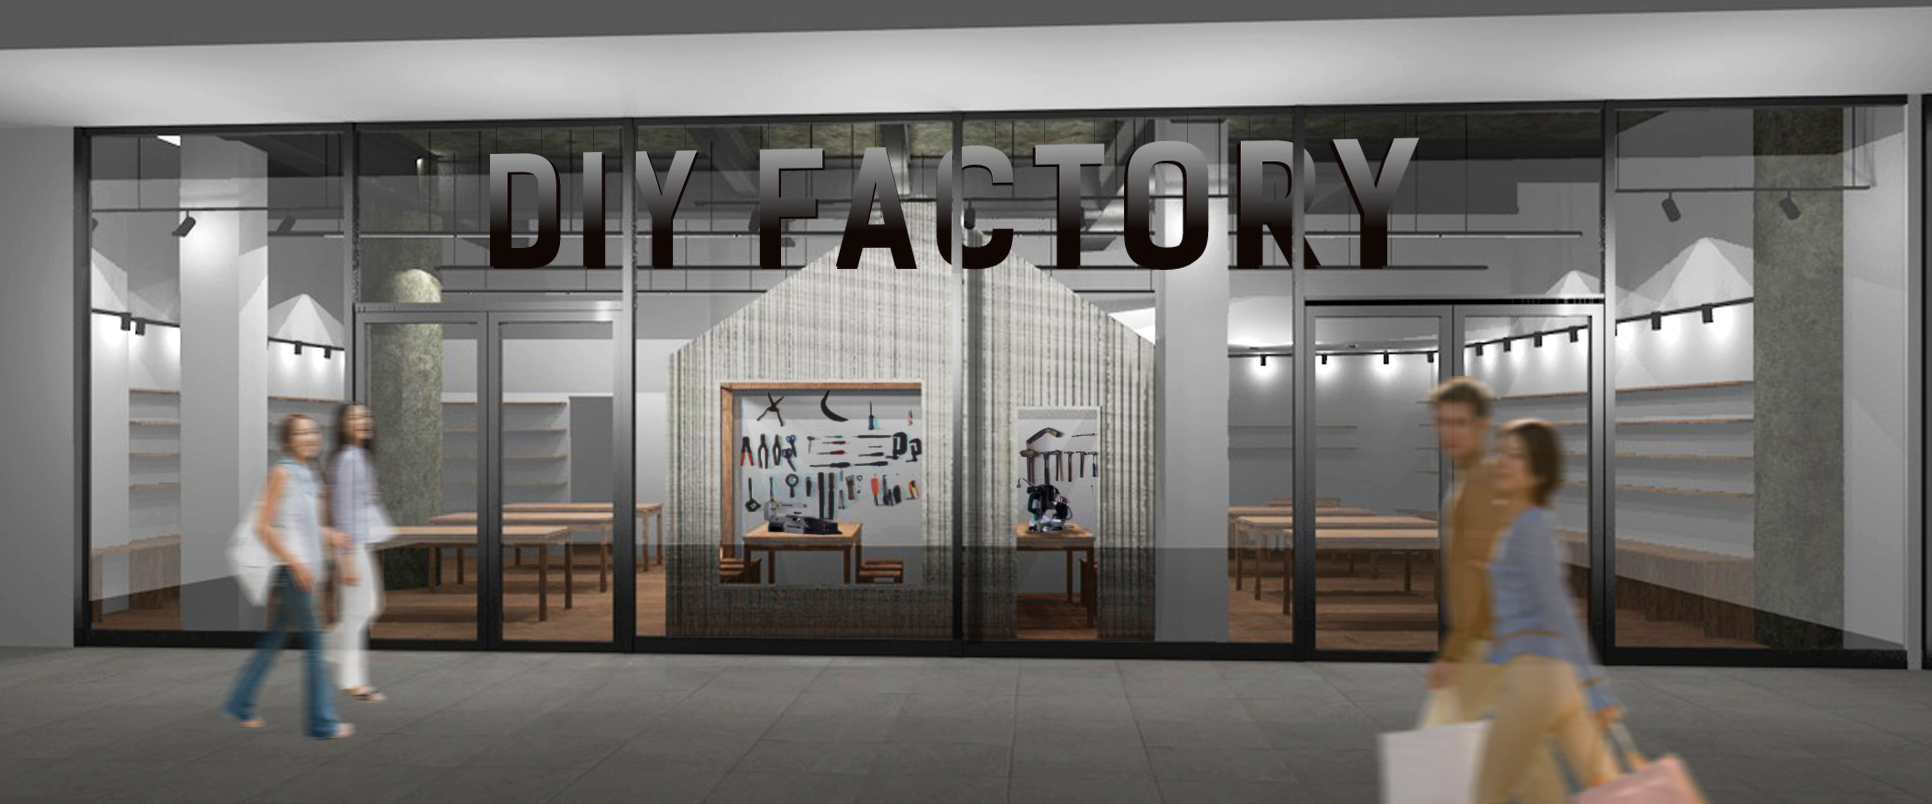 日本初のリアルdiyショップ Diy Factory 第2号店が二子玉川ライズ S C テラスマーケットに4月24日オープン 株式会社 大都のプレスリリース